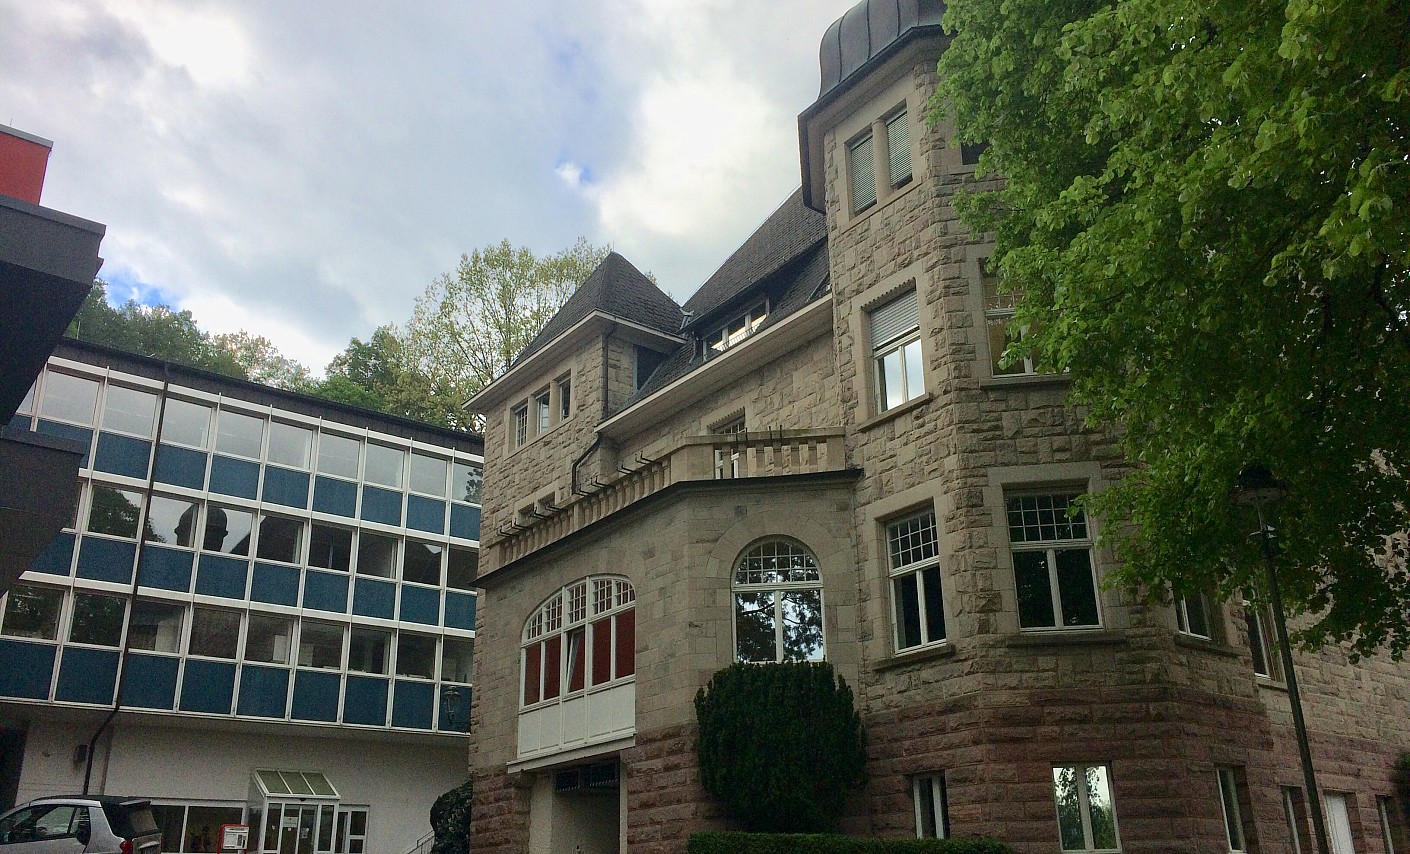 Institut Baden Baden